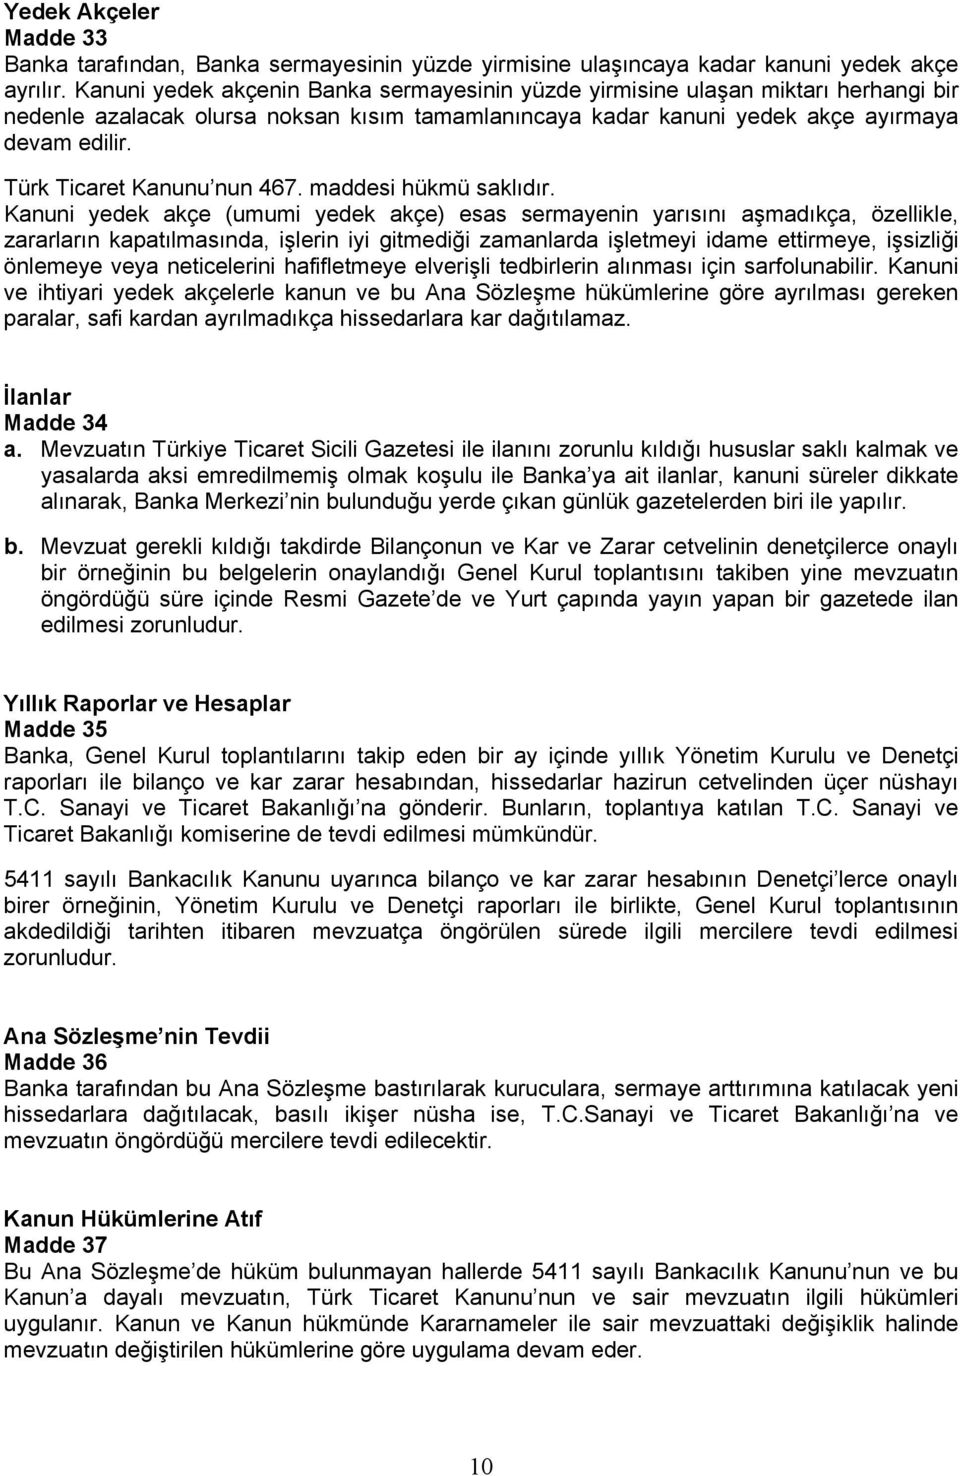 Türk Ticaret Kanunu nun 467. maddesi hükmü saklıdır.